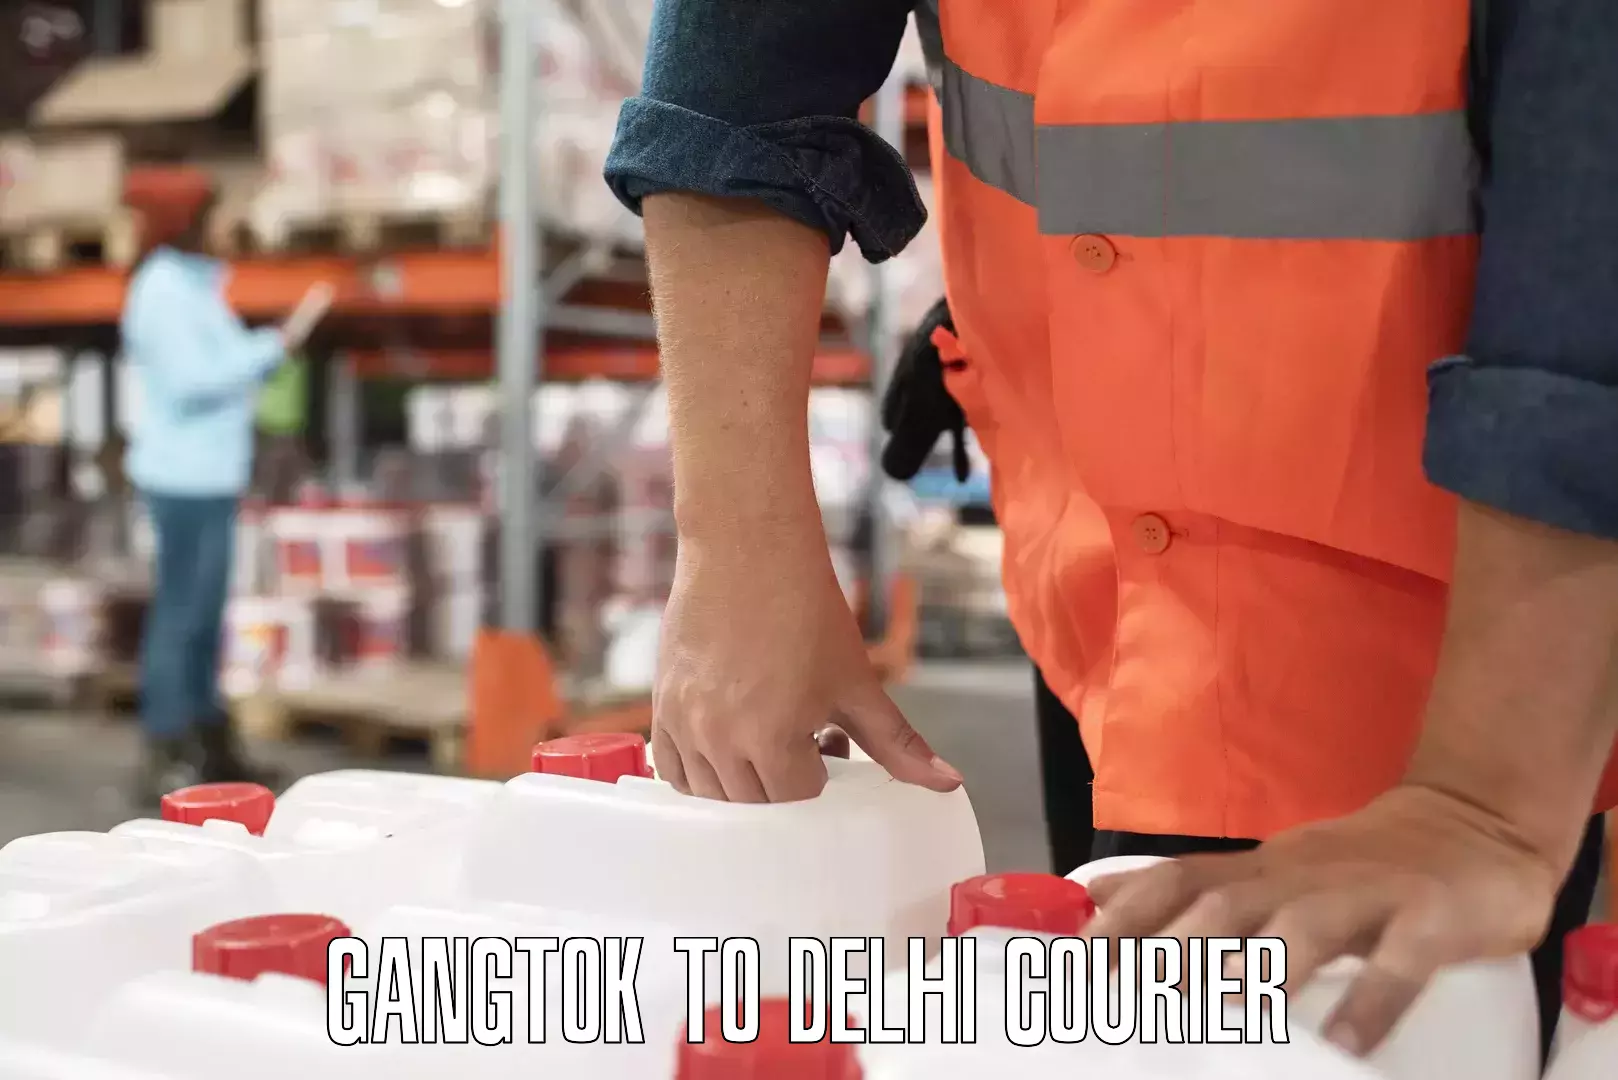 High-capacity parcel service Gangtok to Sansad Marg